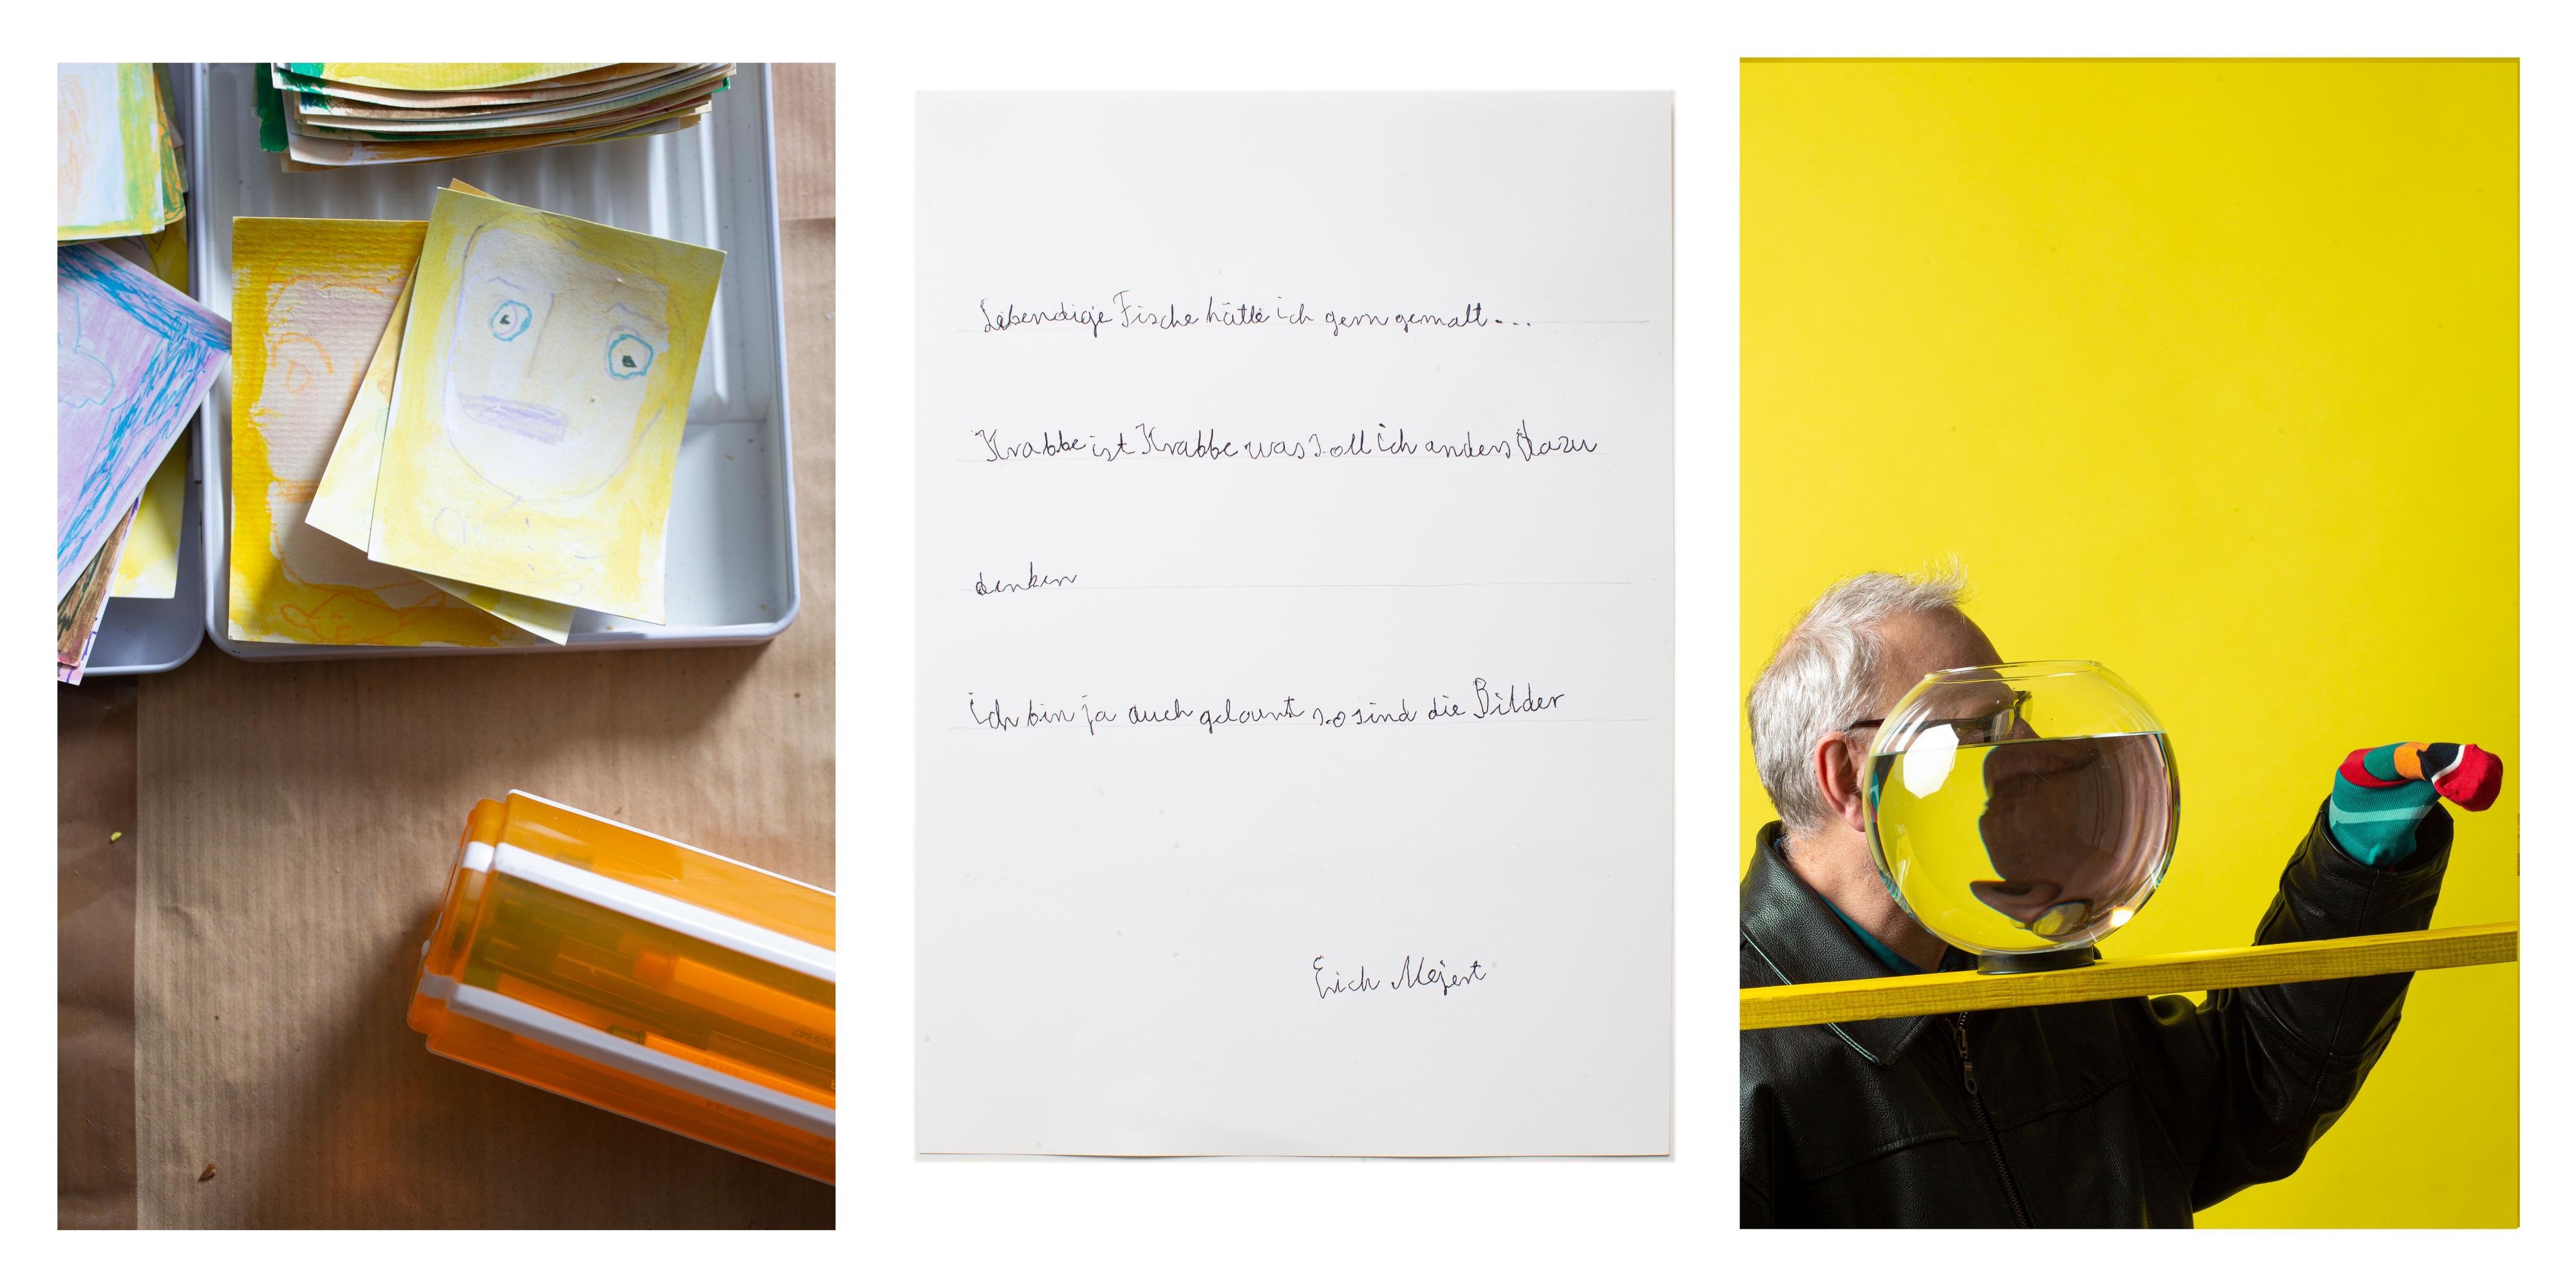 Collage aus drei Fotos: In Schachteln liegen Blätter mit gezeichneten Gesichtern - davor liegt eine Box mit Stiften; ein kurzer Brief und ein Mann hinter einem runden Glas vor einer gelben Wand. Er streckt dir linke Hand vor - darüber trägt er einen bunte Socke.